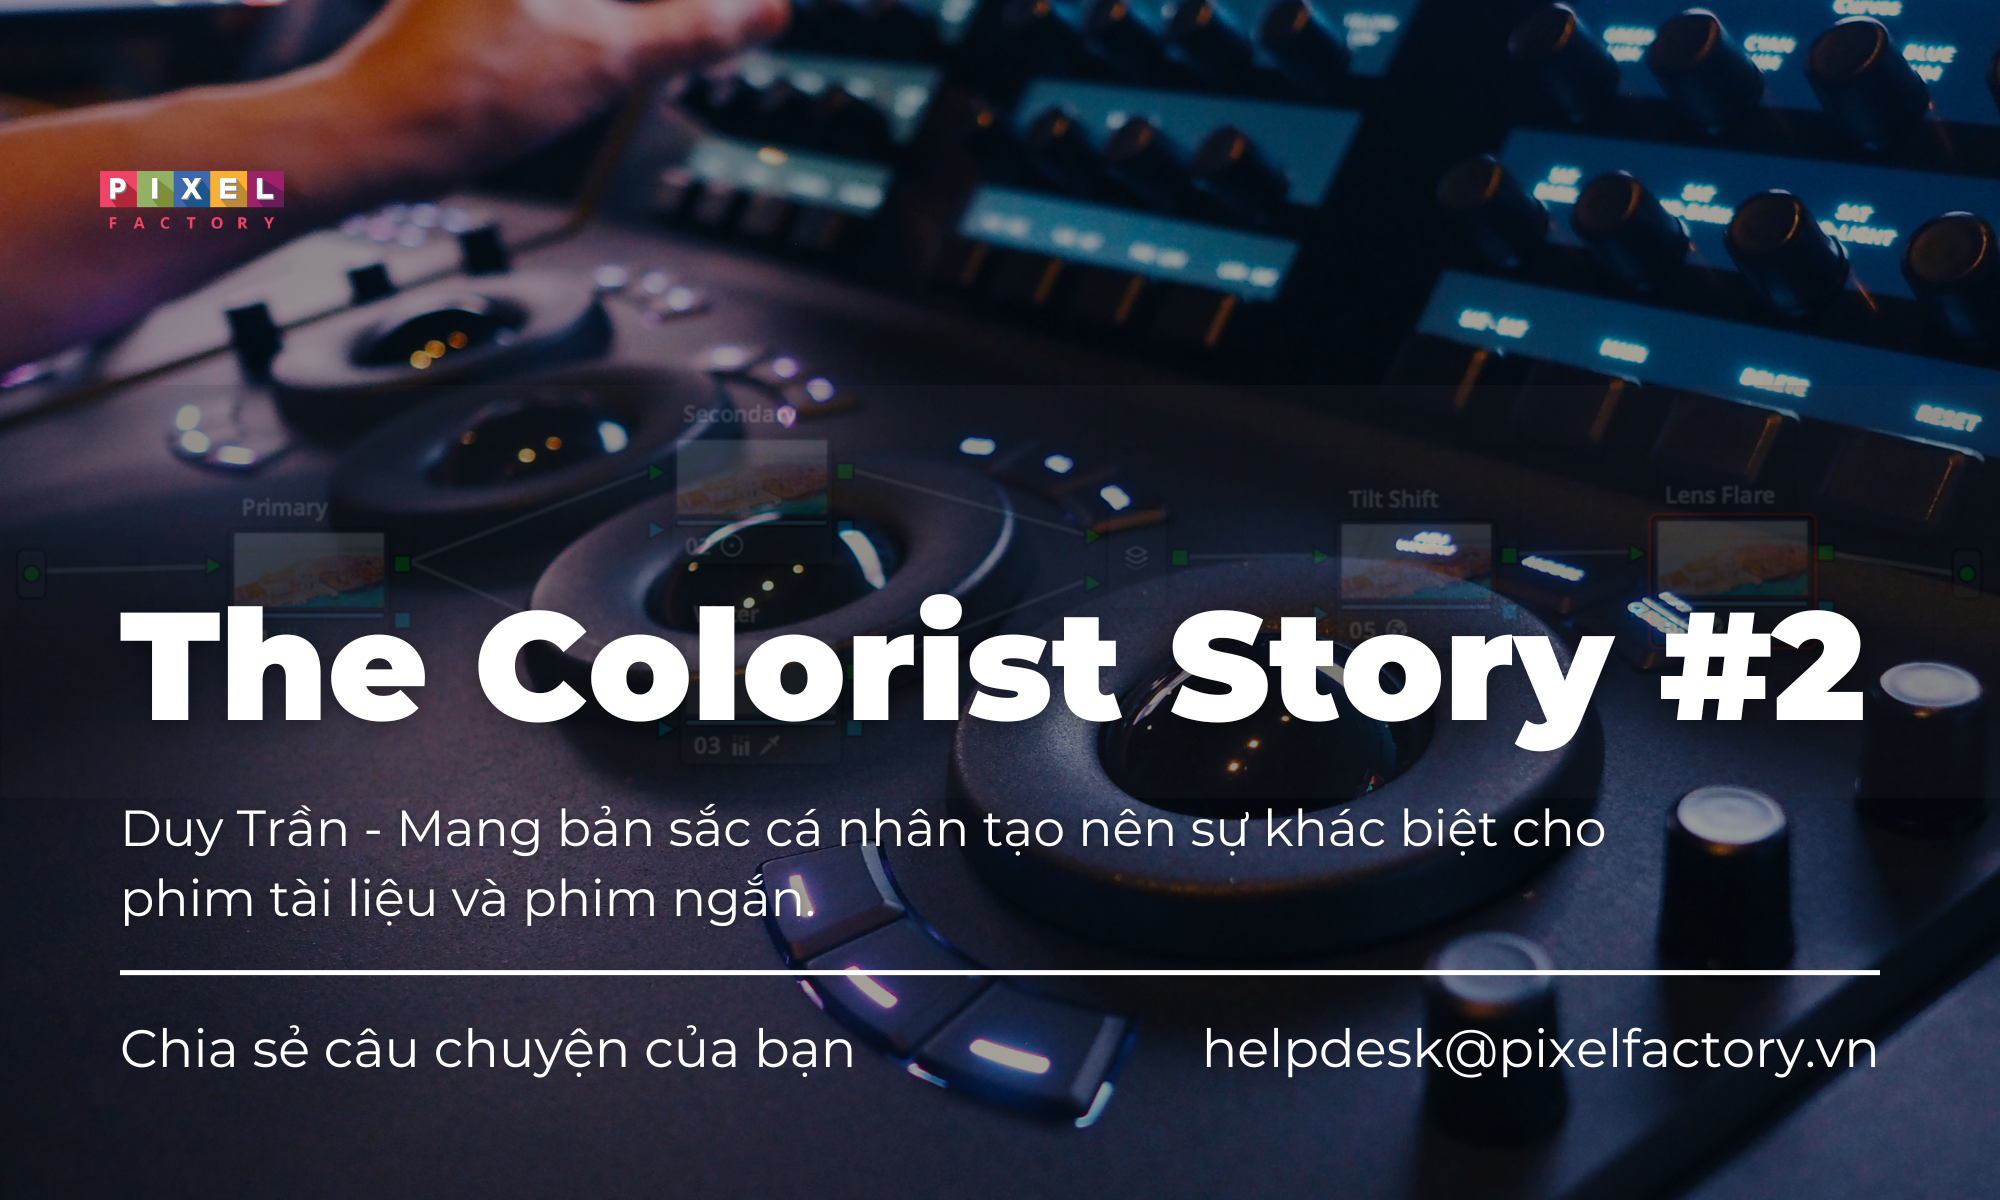 The Colorist Story #2: Câu chuyện của Duy Trần - Mang bản sắc cá nhân tạo nên sự khác biệt cho phim tài liệu và phim ngắn.